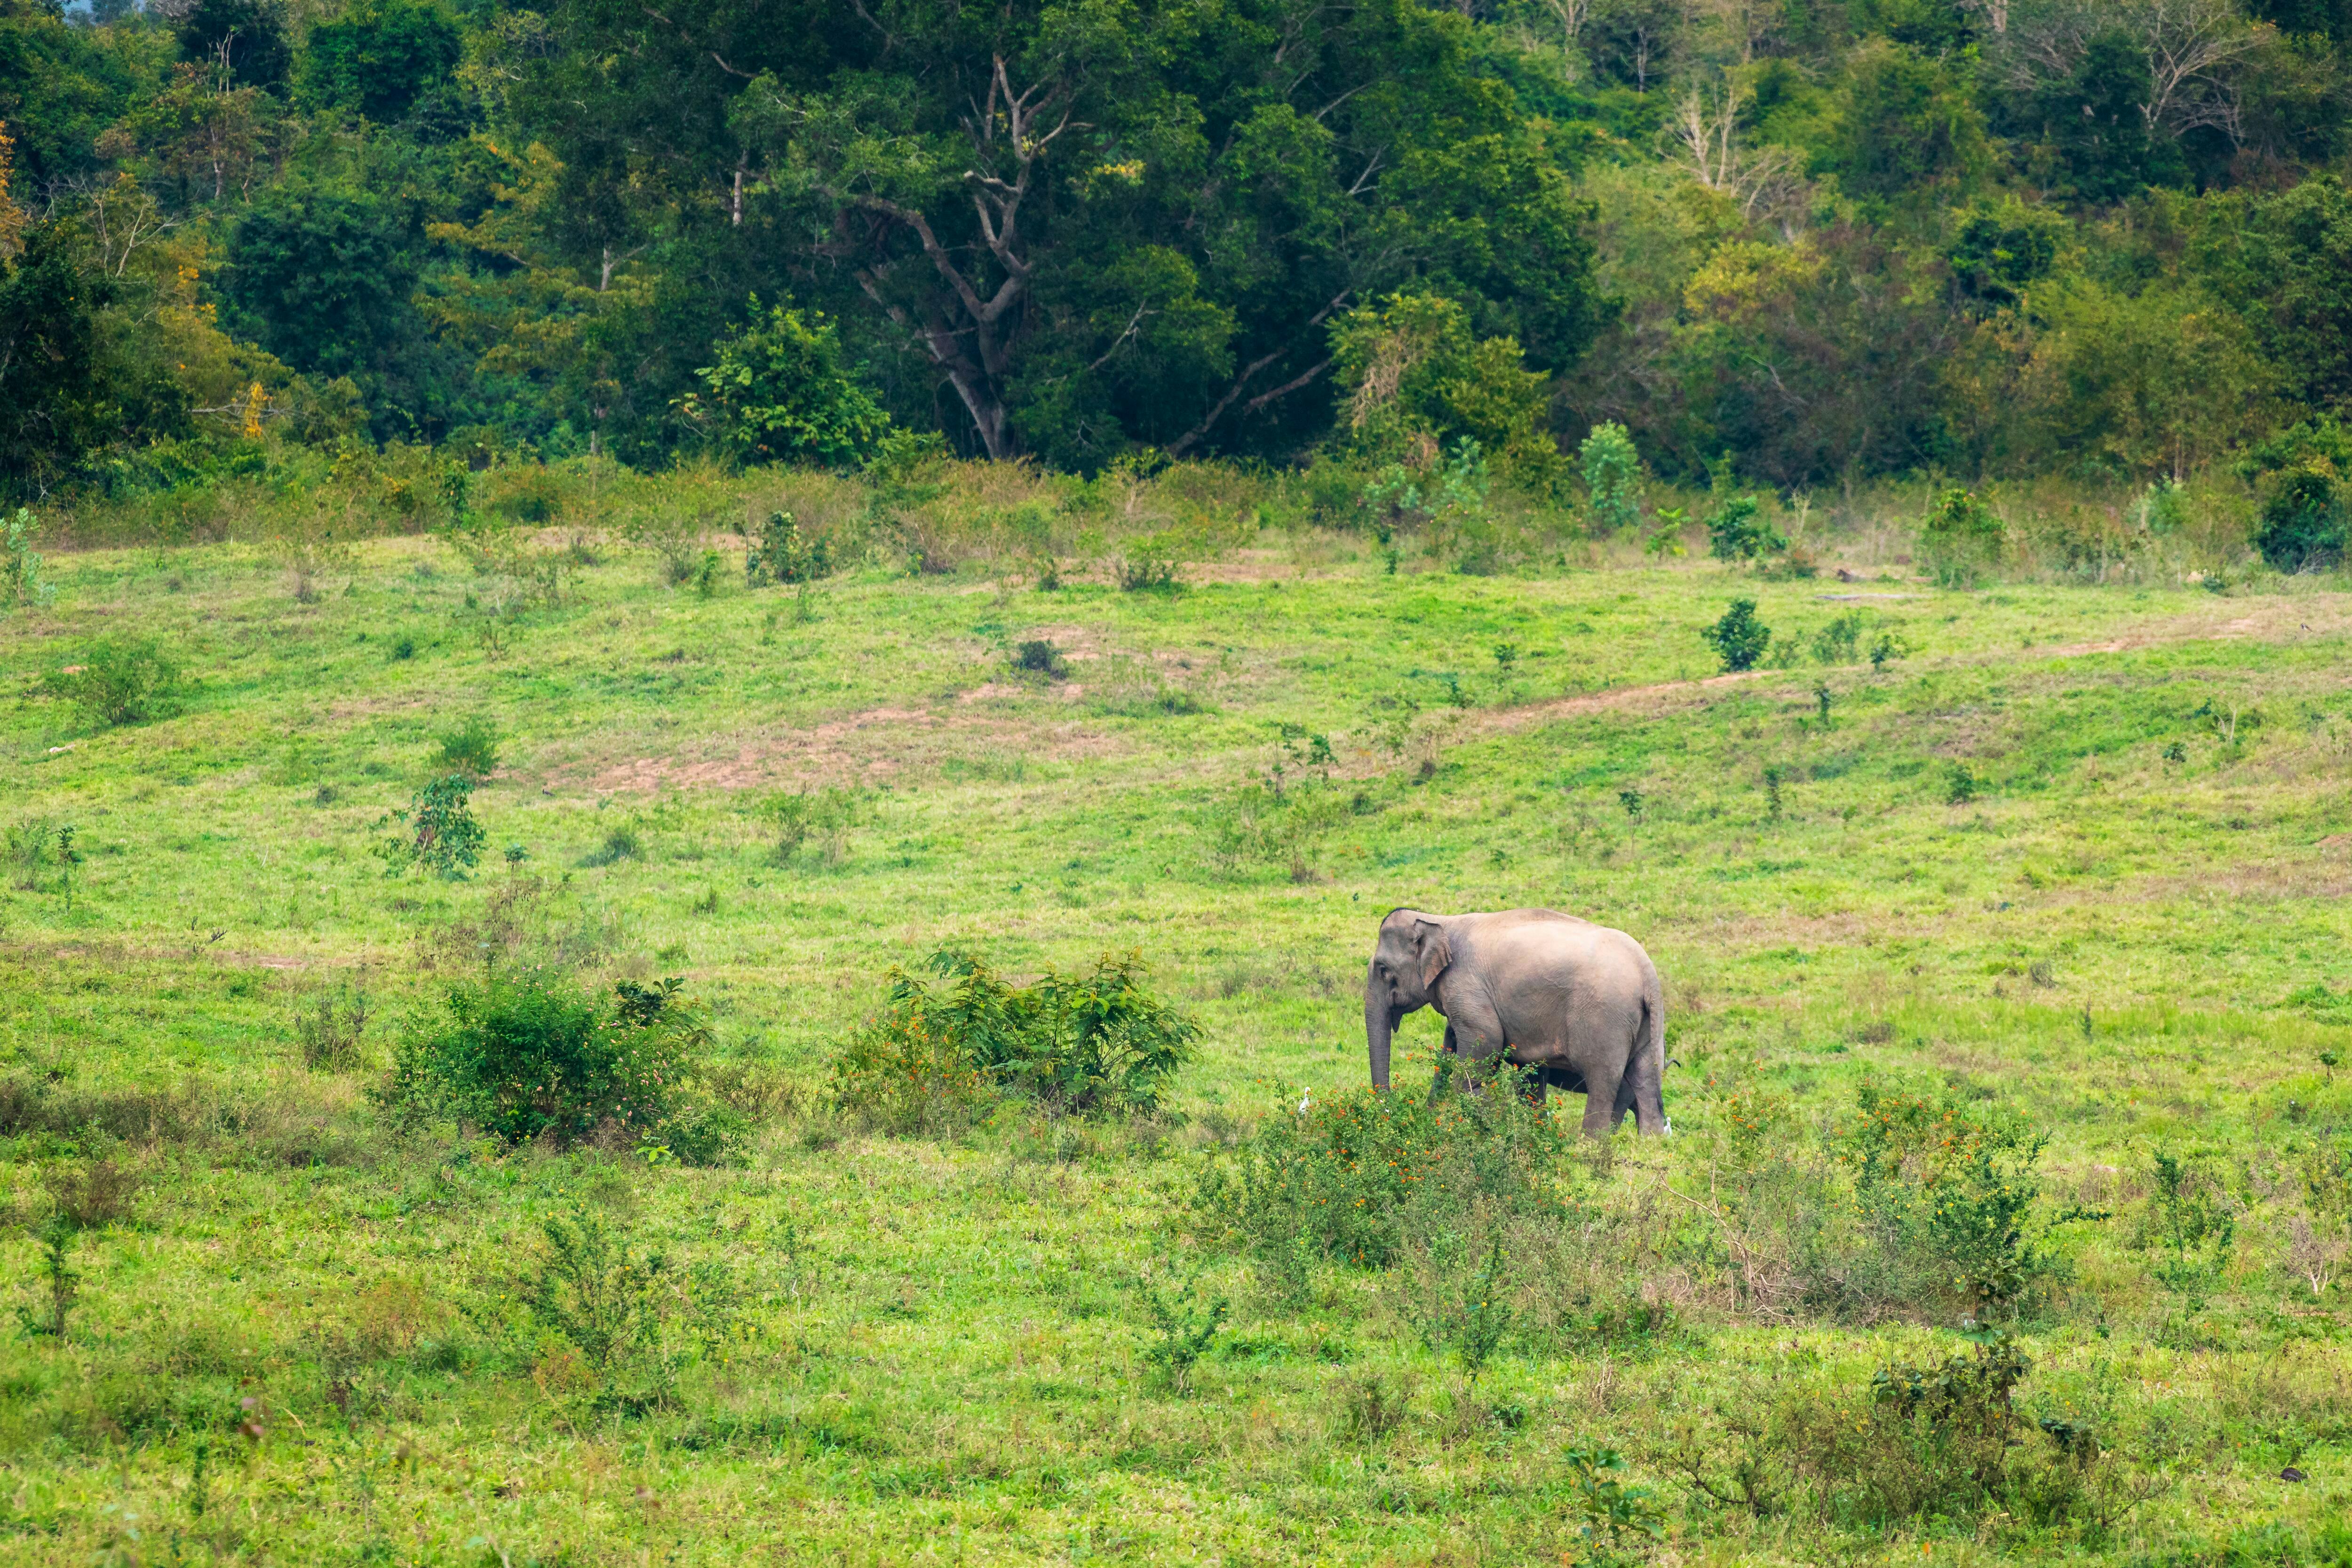 Kui Buri & off-road-elefantsafari – utflykt